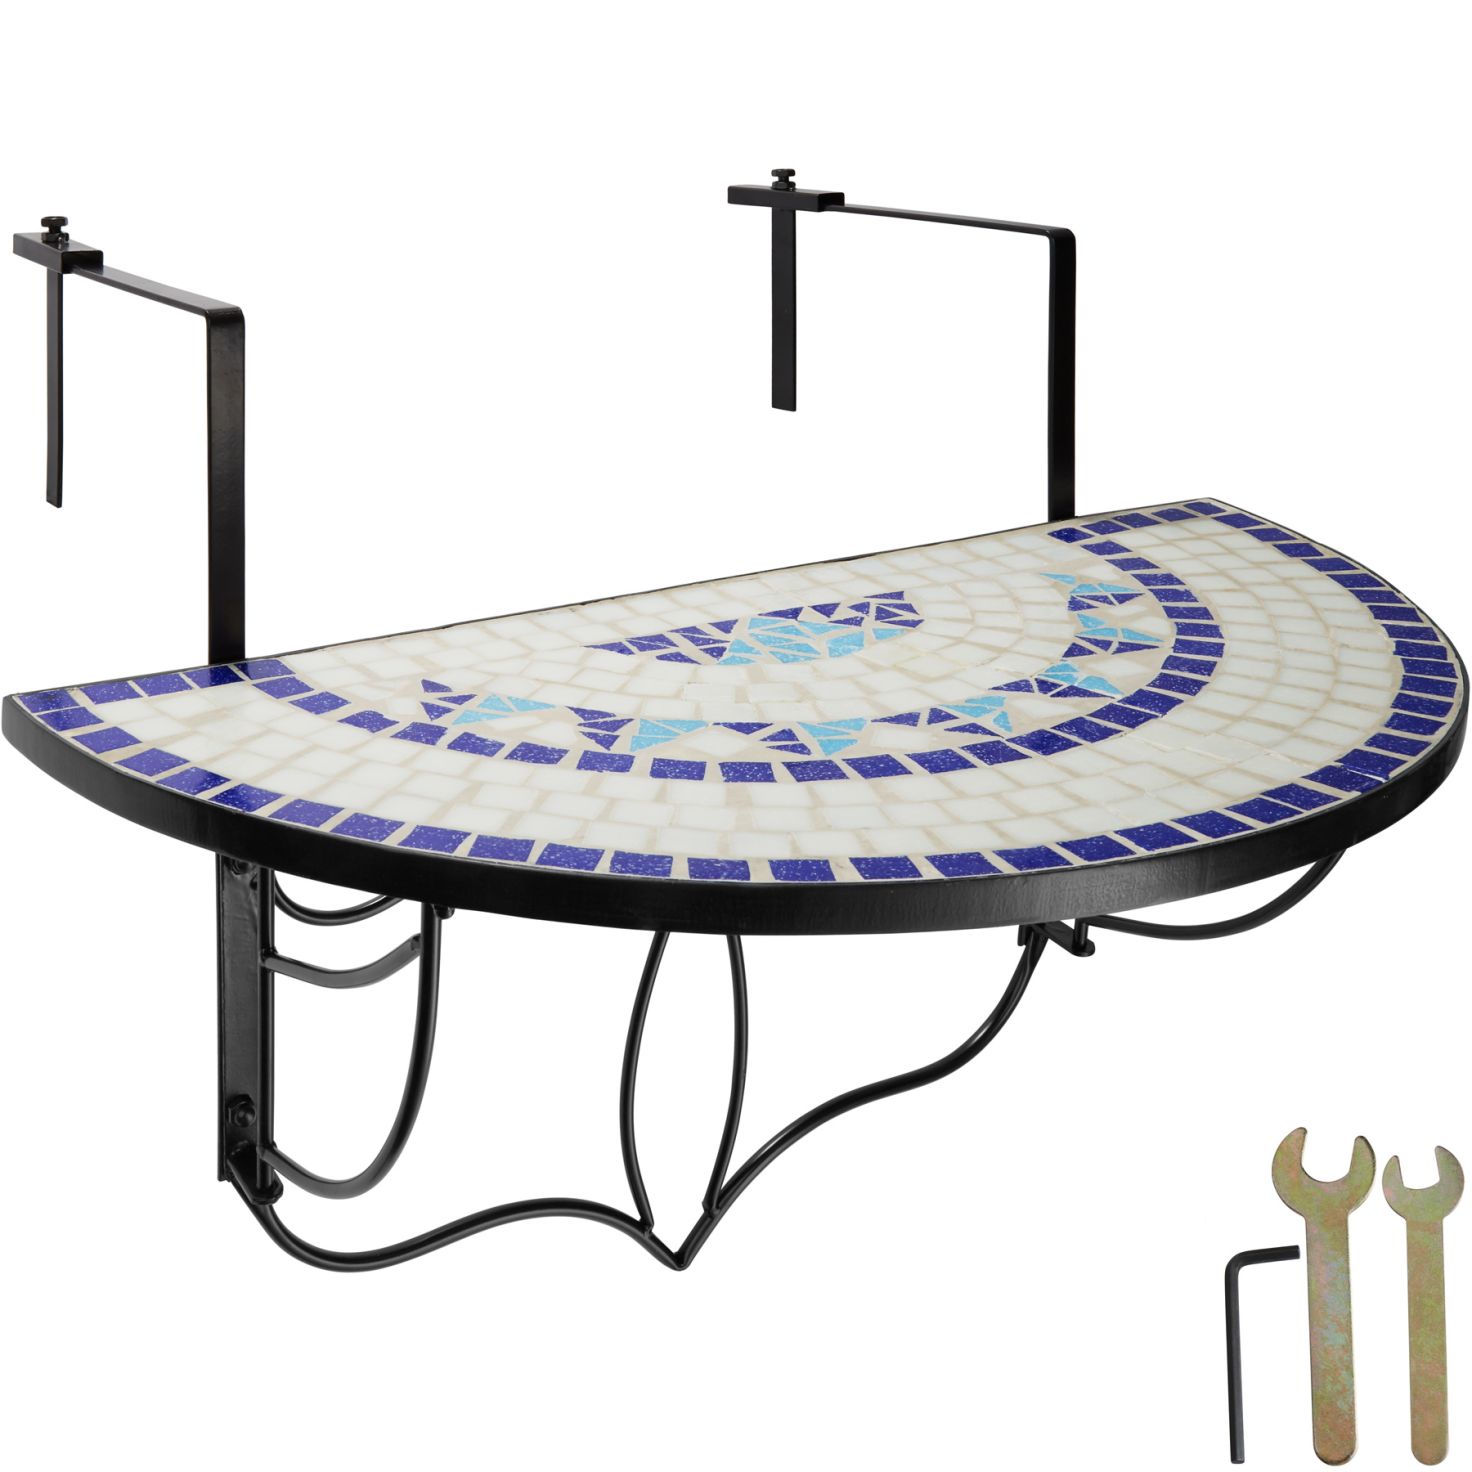 Mozaikový balkónový stolek, skládací balkonový stůl